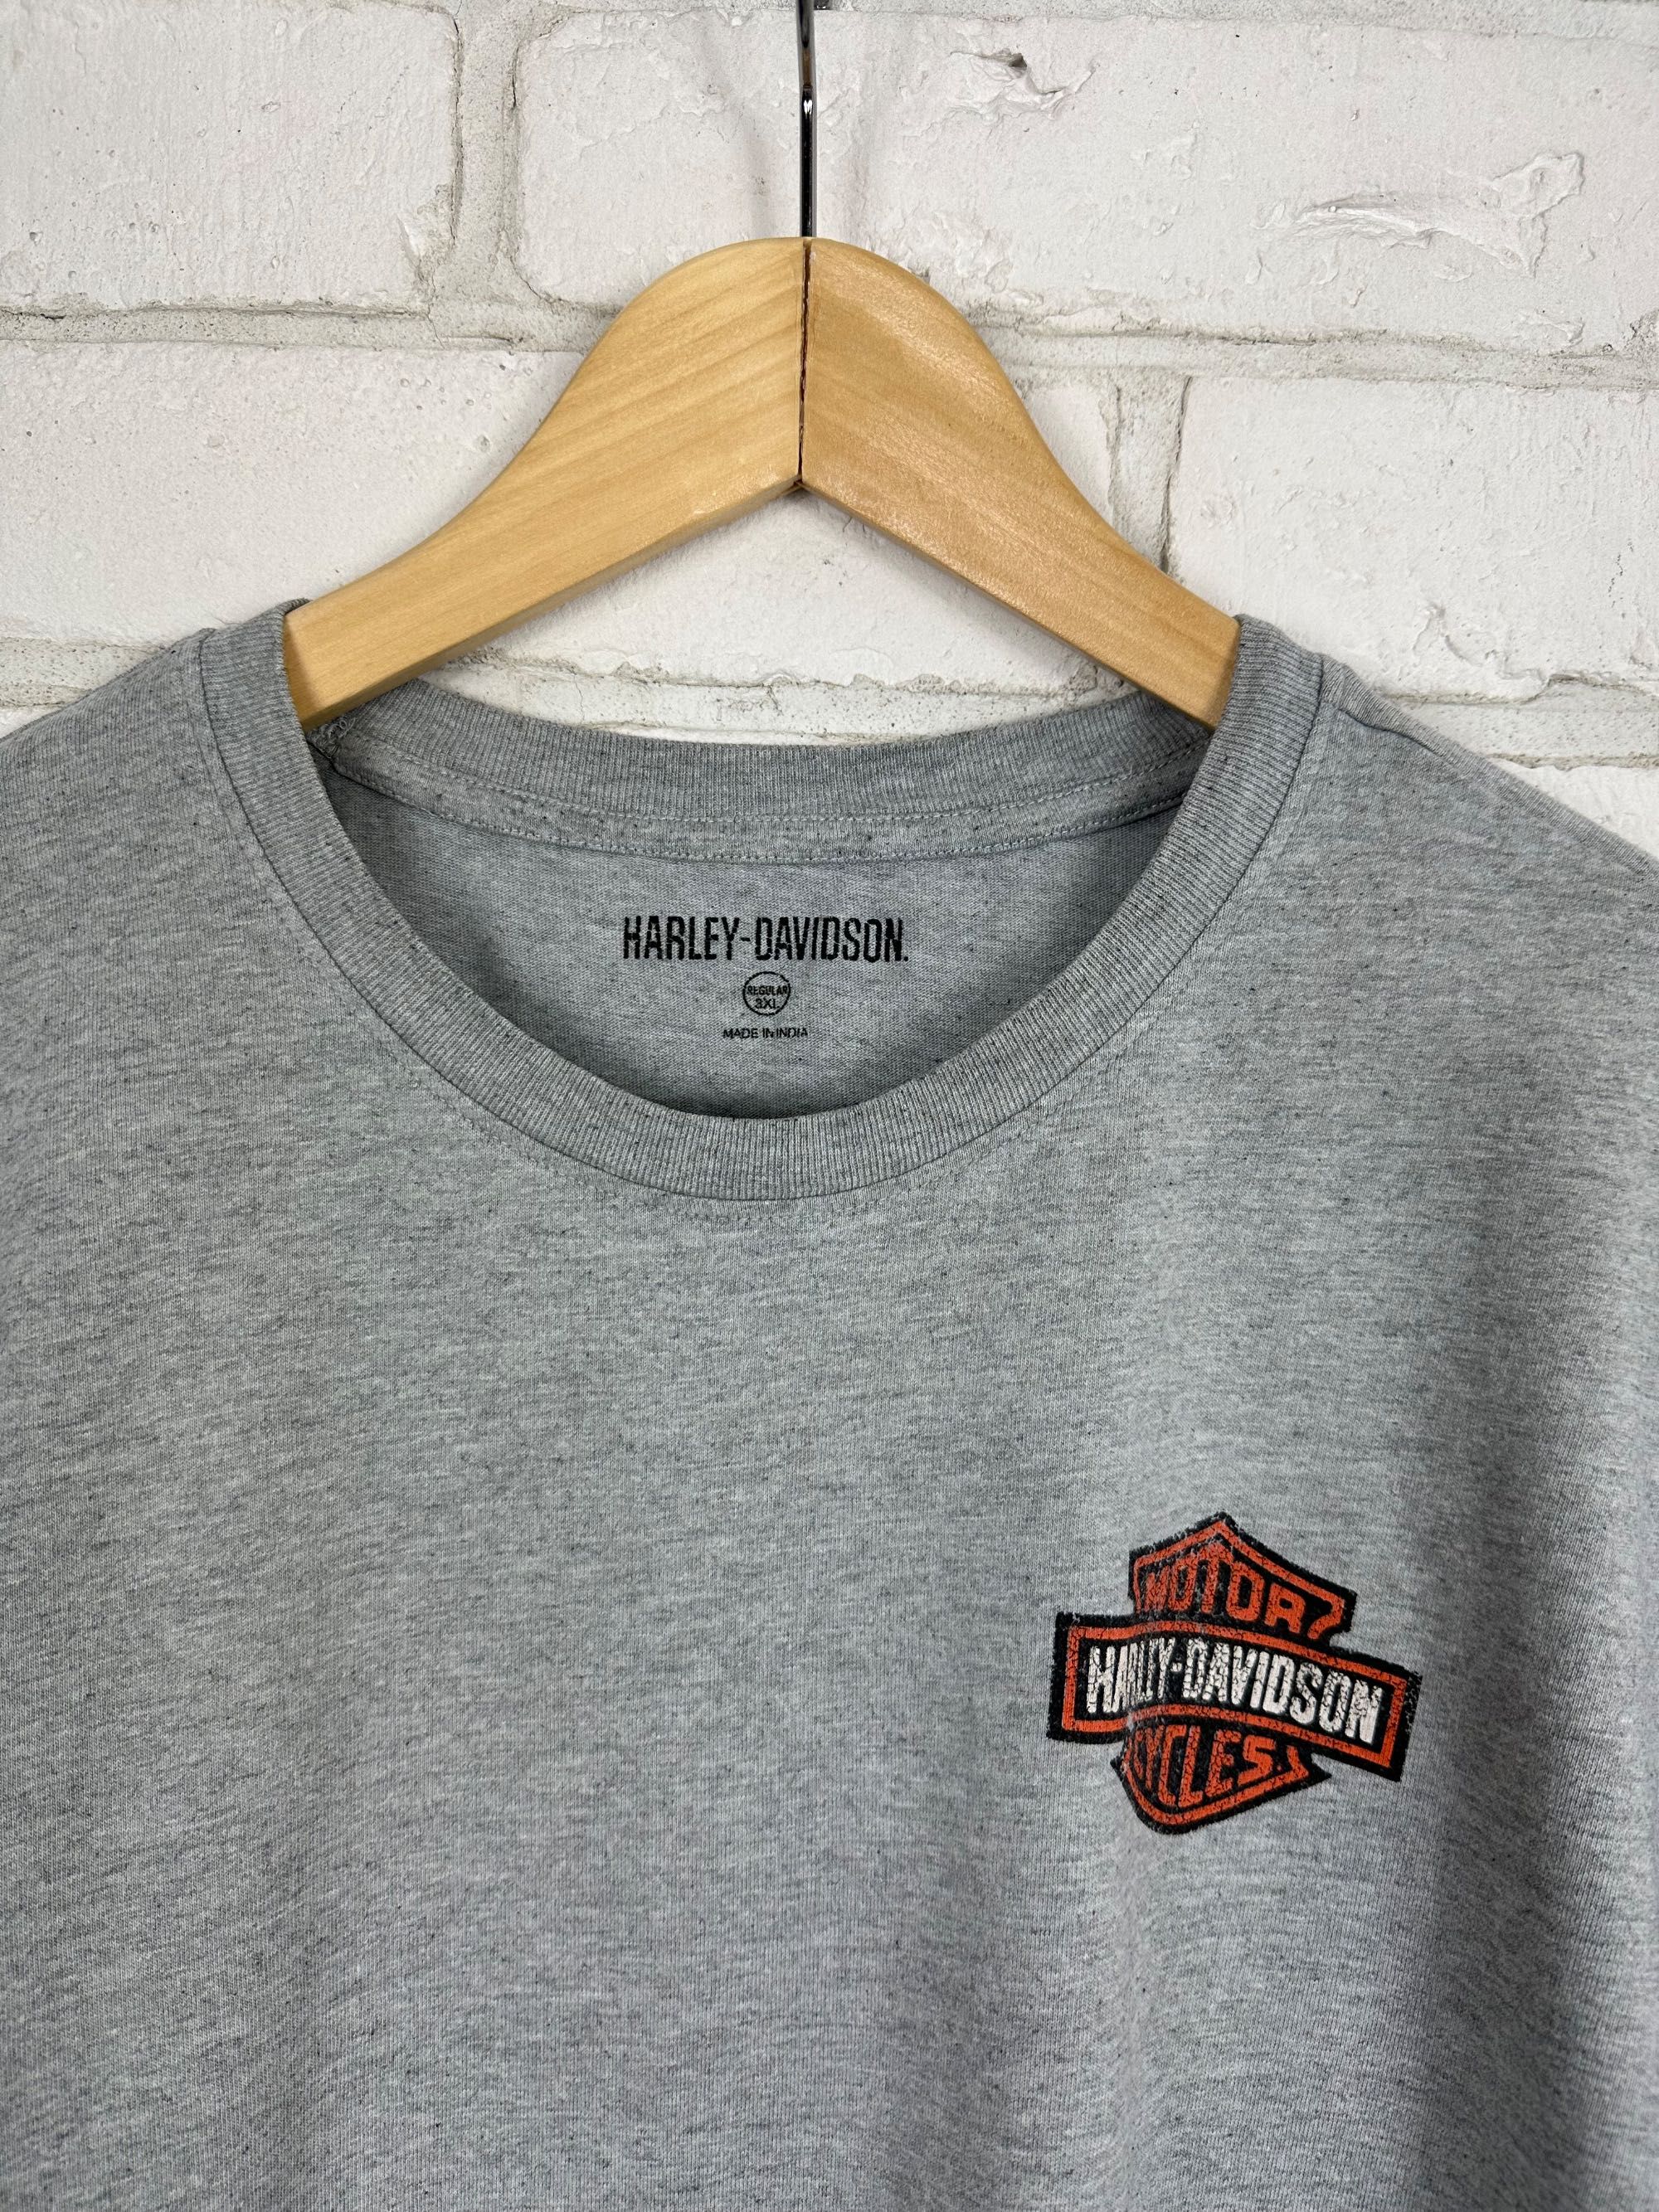 T-shirt harley davidson double bar & shield logo tee